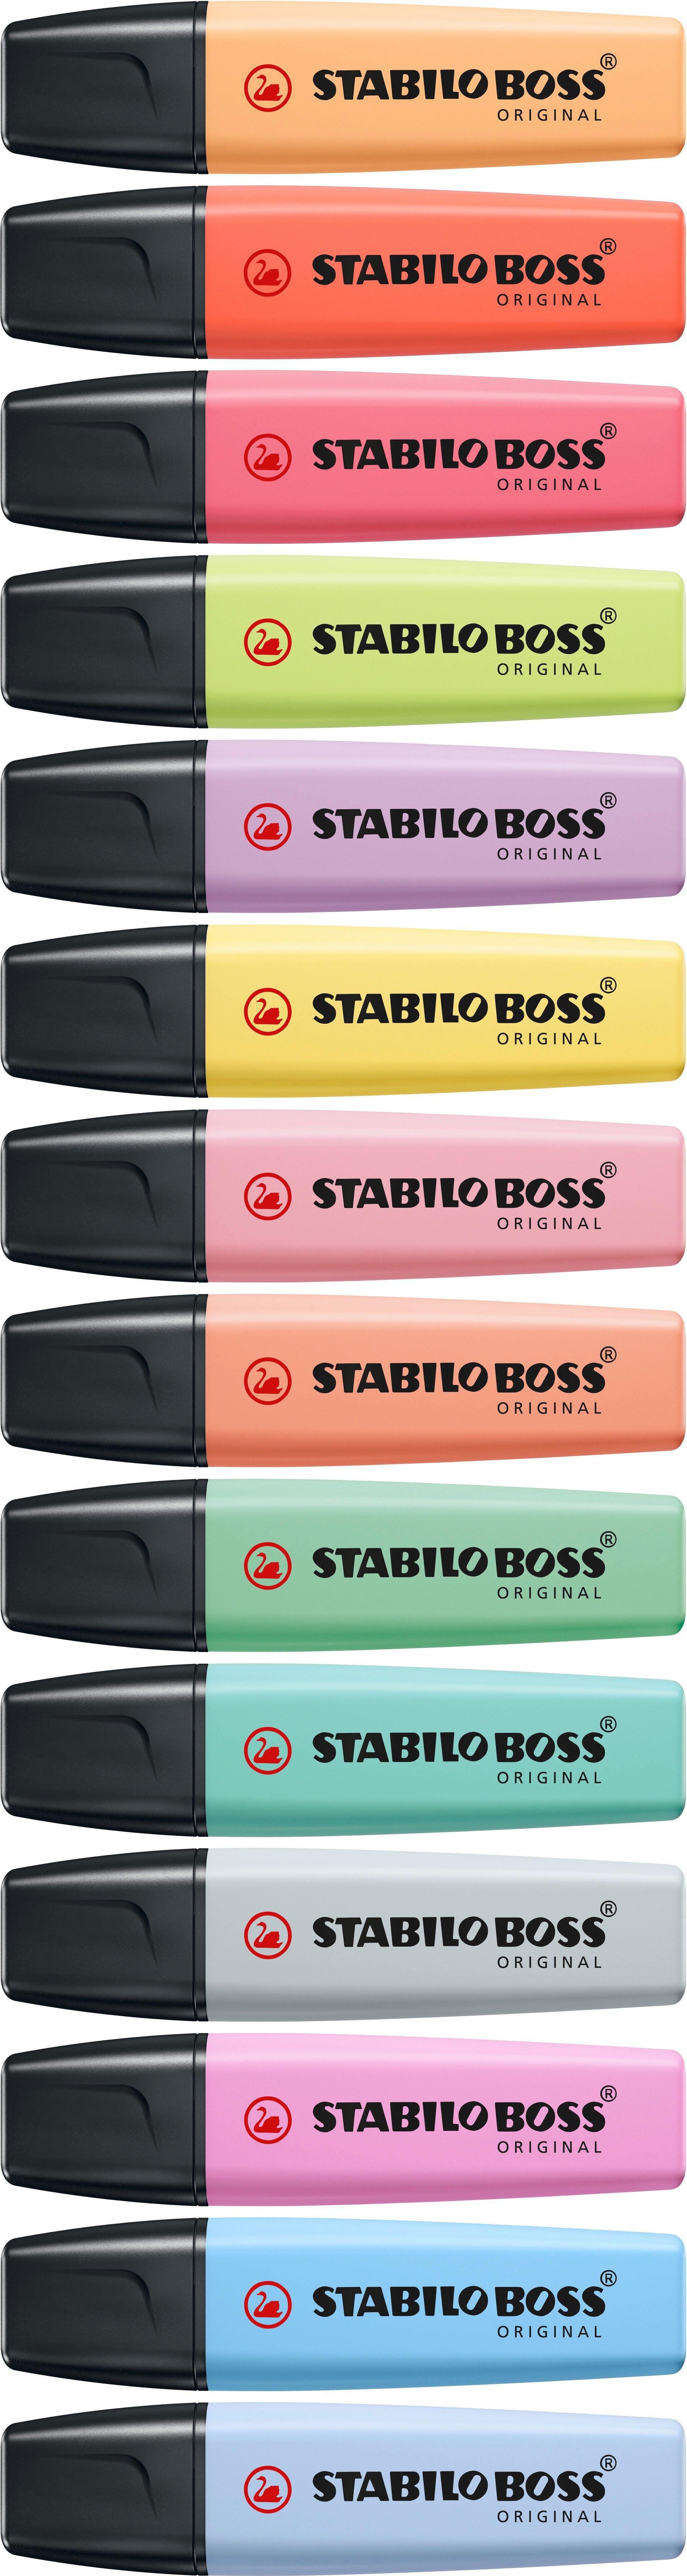 STABILO STABILO BOSS Pastell 2-5mm 70/194 grau  